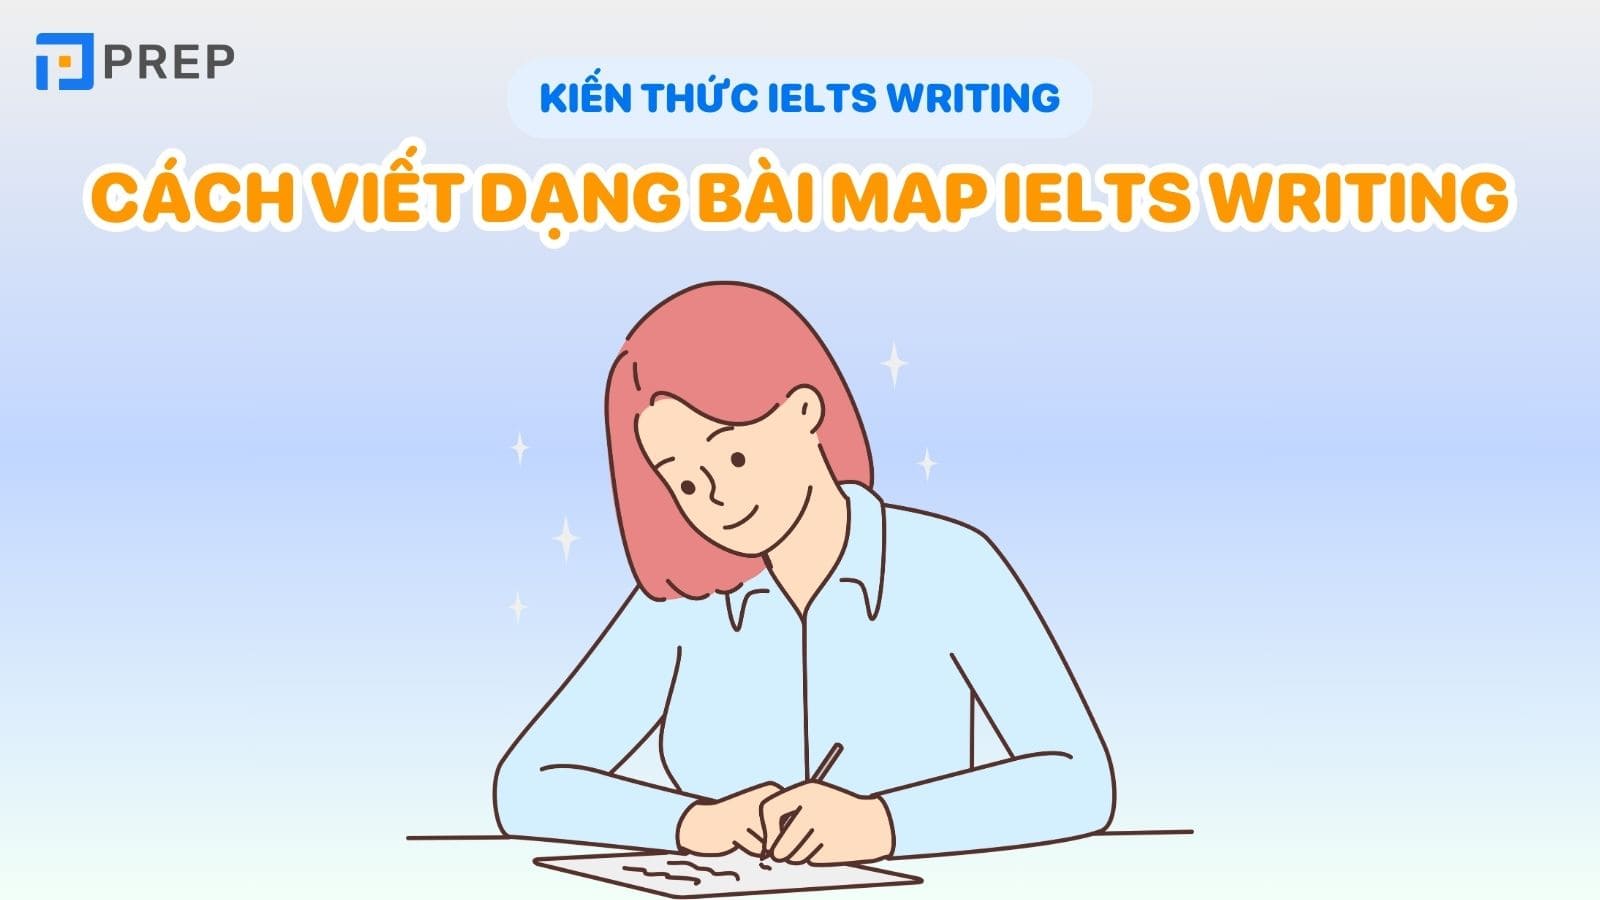 cach-viet-dang-bai-map-ielts-writing.jpg